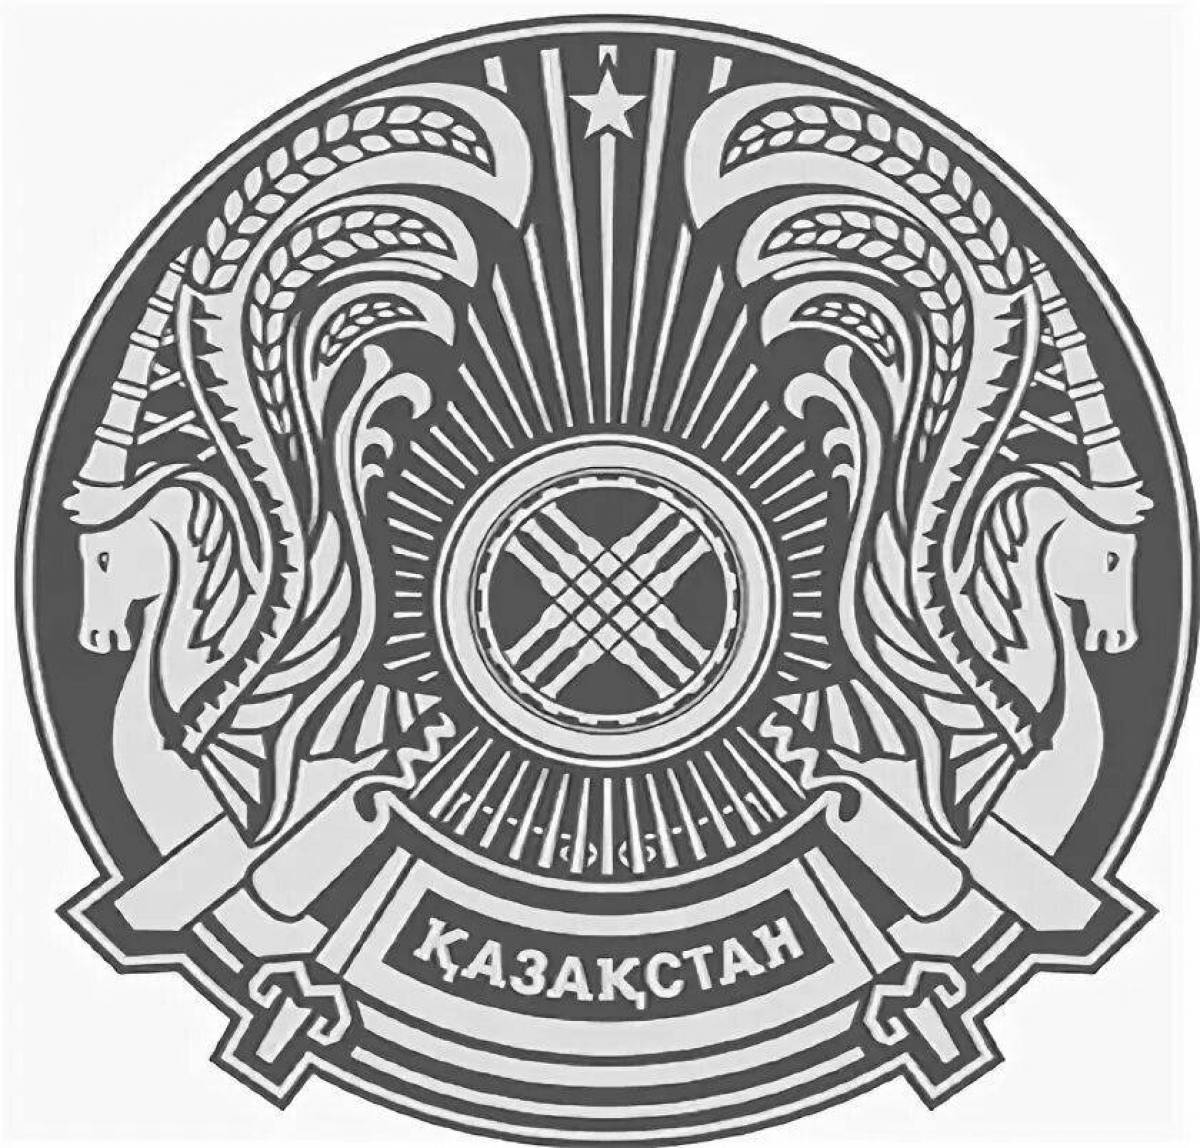 Фото Роскошный герб казахстана